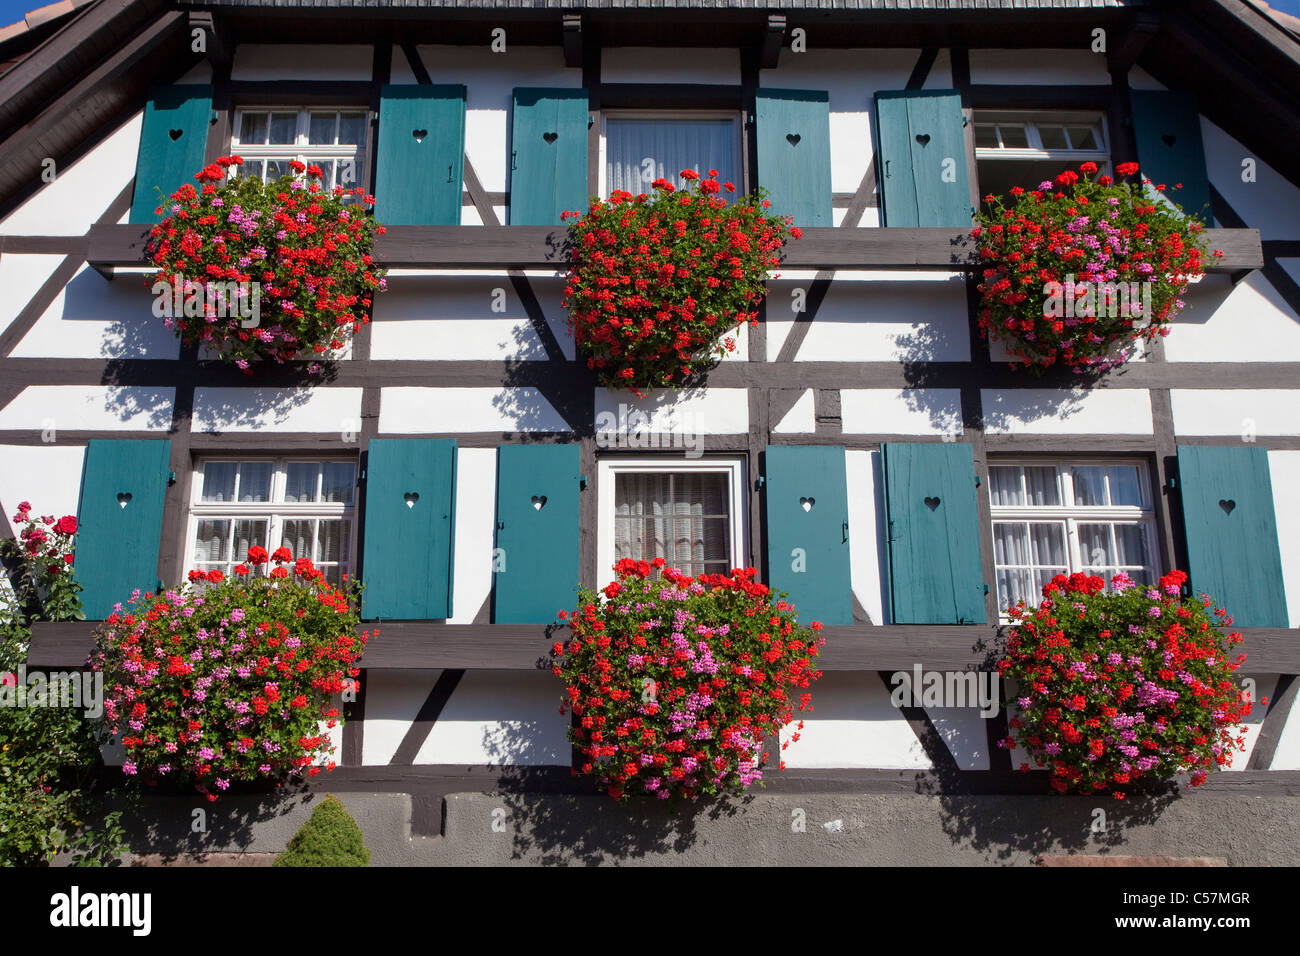 Fassade von einem Bauernhaus, Facherkhaus a Sasbachwalden, facciata di una casa in legno e muratura con decorazioni di fiori Foto Stock